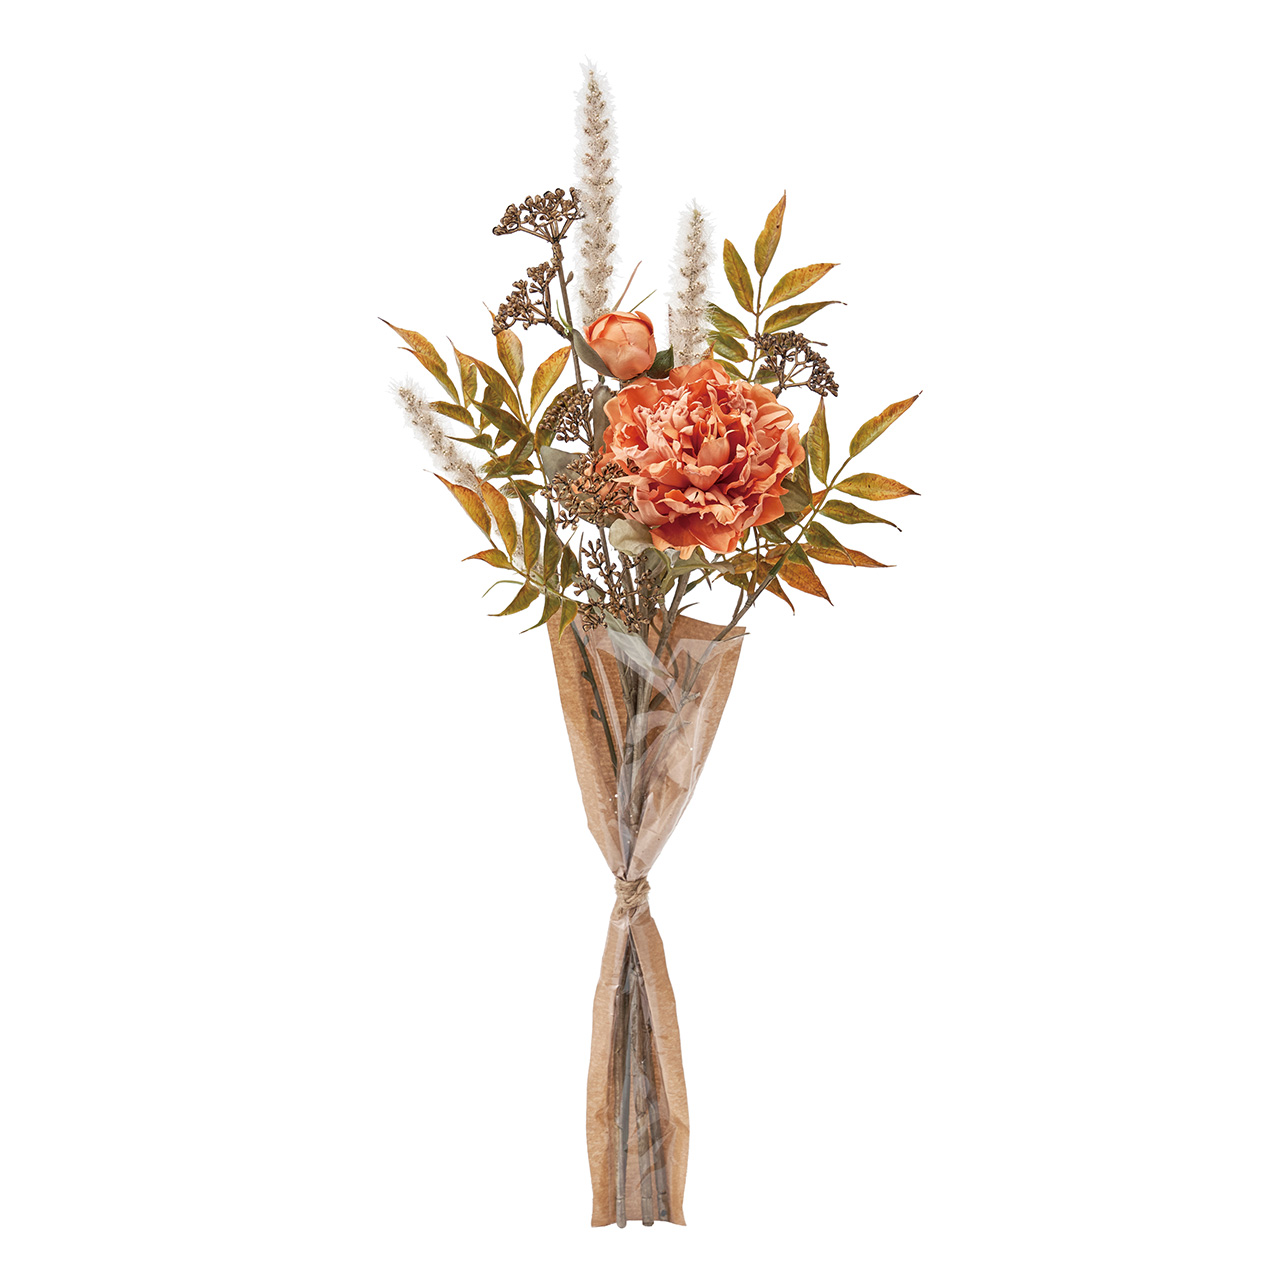 マイフラ 通販/MAGIQ ドライドダリアブーケ オレンジグリーン アーティフィシャルフラワー ドライフラワー風の造花 ダリア  FM002033(花径10×長さ 約58cm オレンジグリーン): MAGIQ(アーティフィシャルフラワー 造花)/全国にMAGIQ、花器、花資材 などをお届けします。